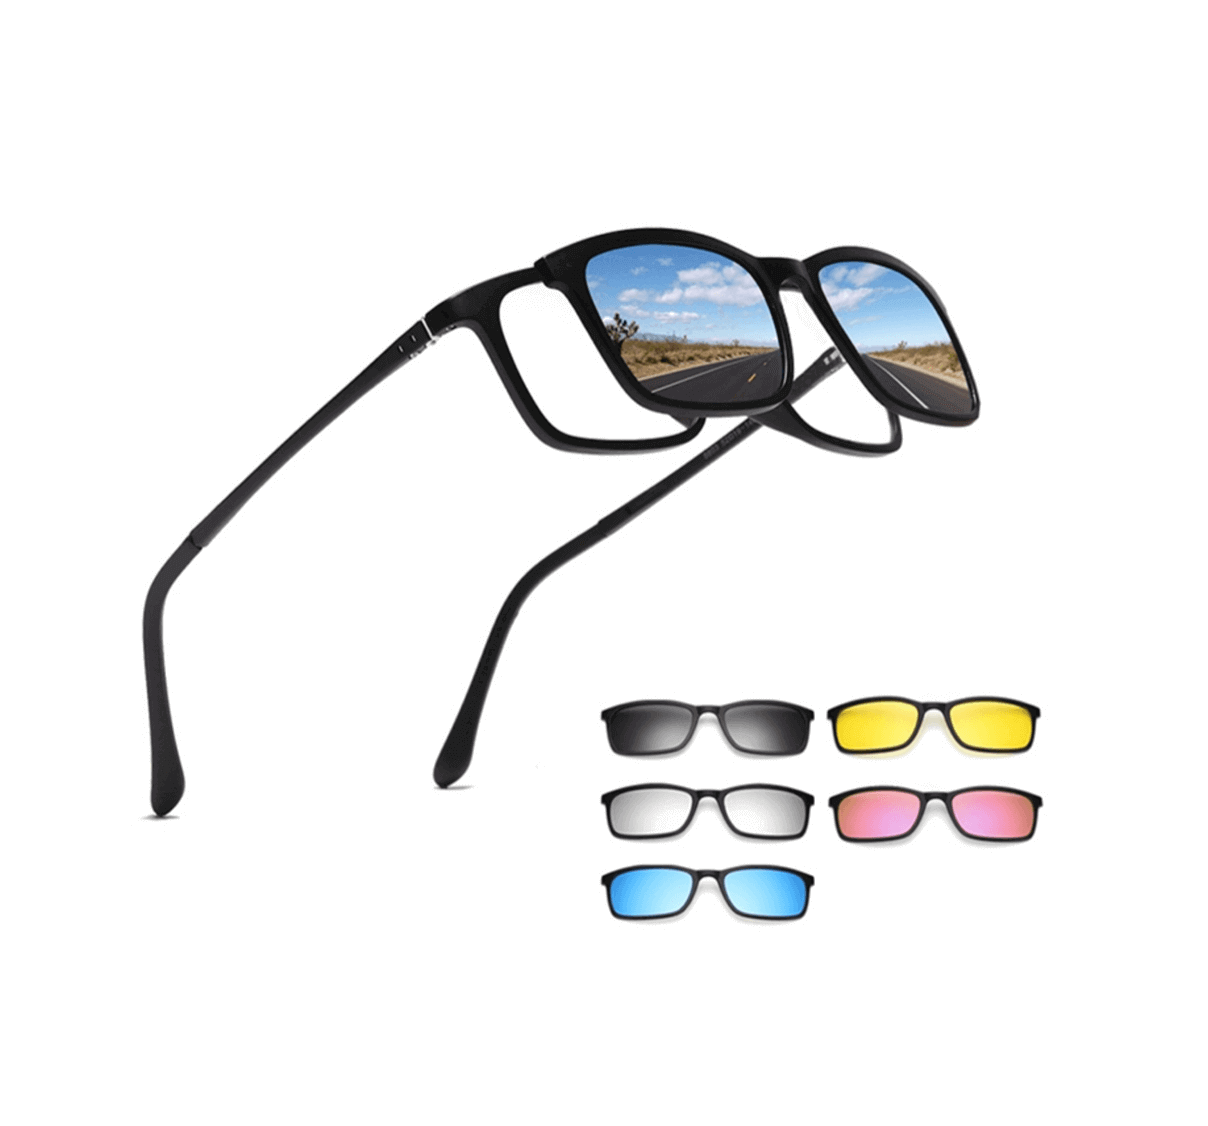 custom clip on sunglasses for plastic frames, best clip on sunglasses for plastic frames, custom sunglasses, plastic sunglasses manufacturers, custom sunglasses manufacturers China